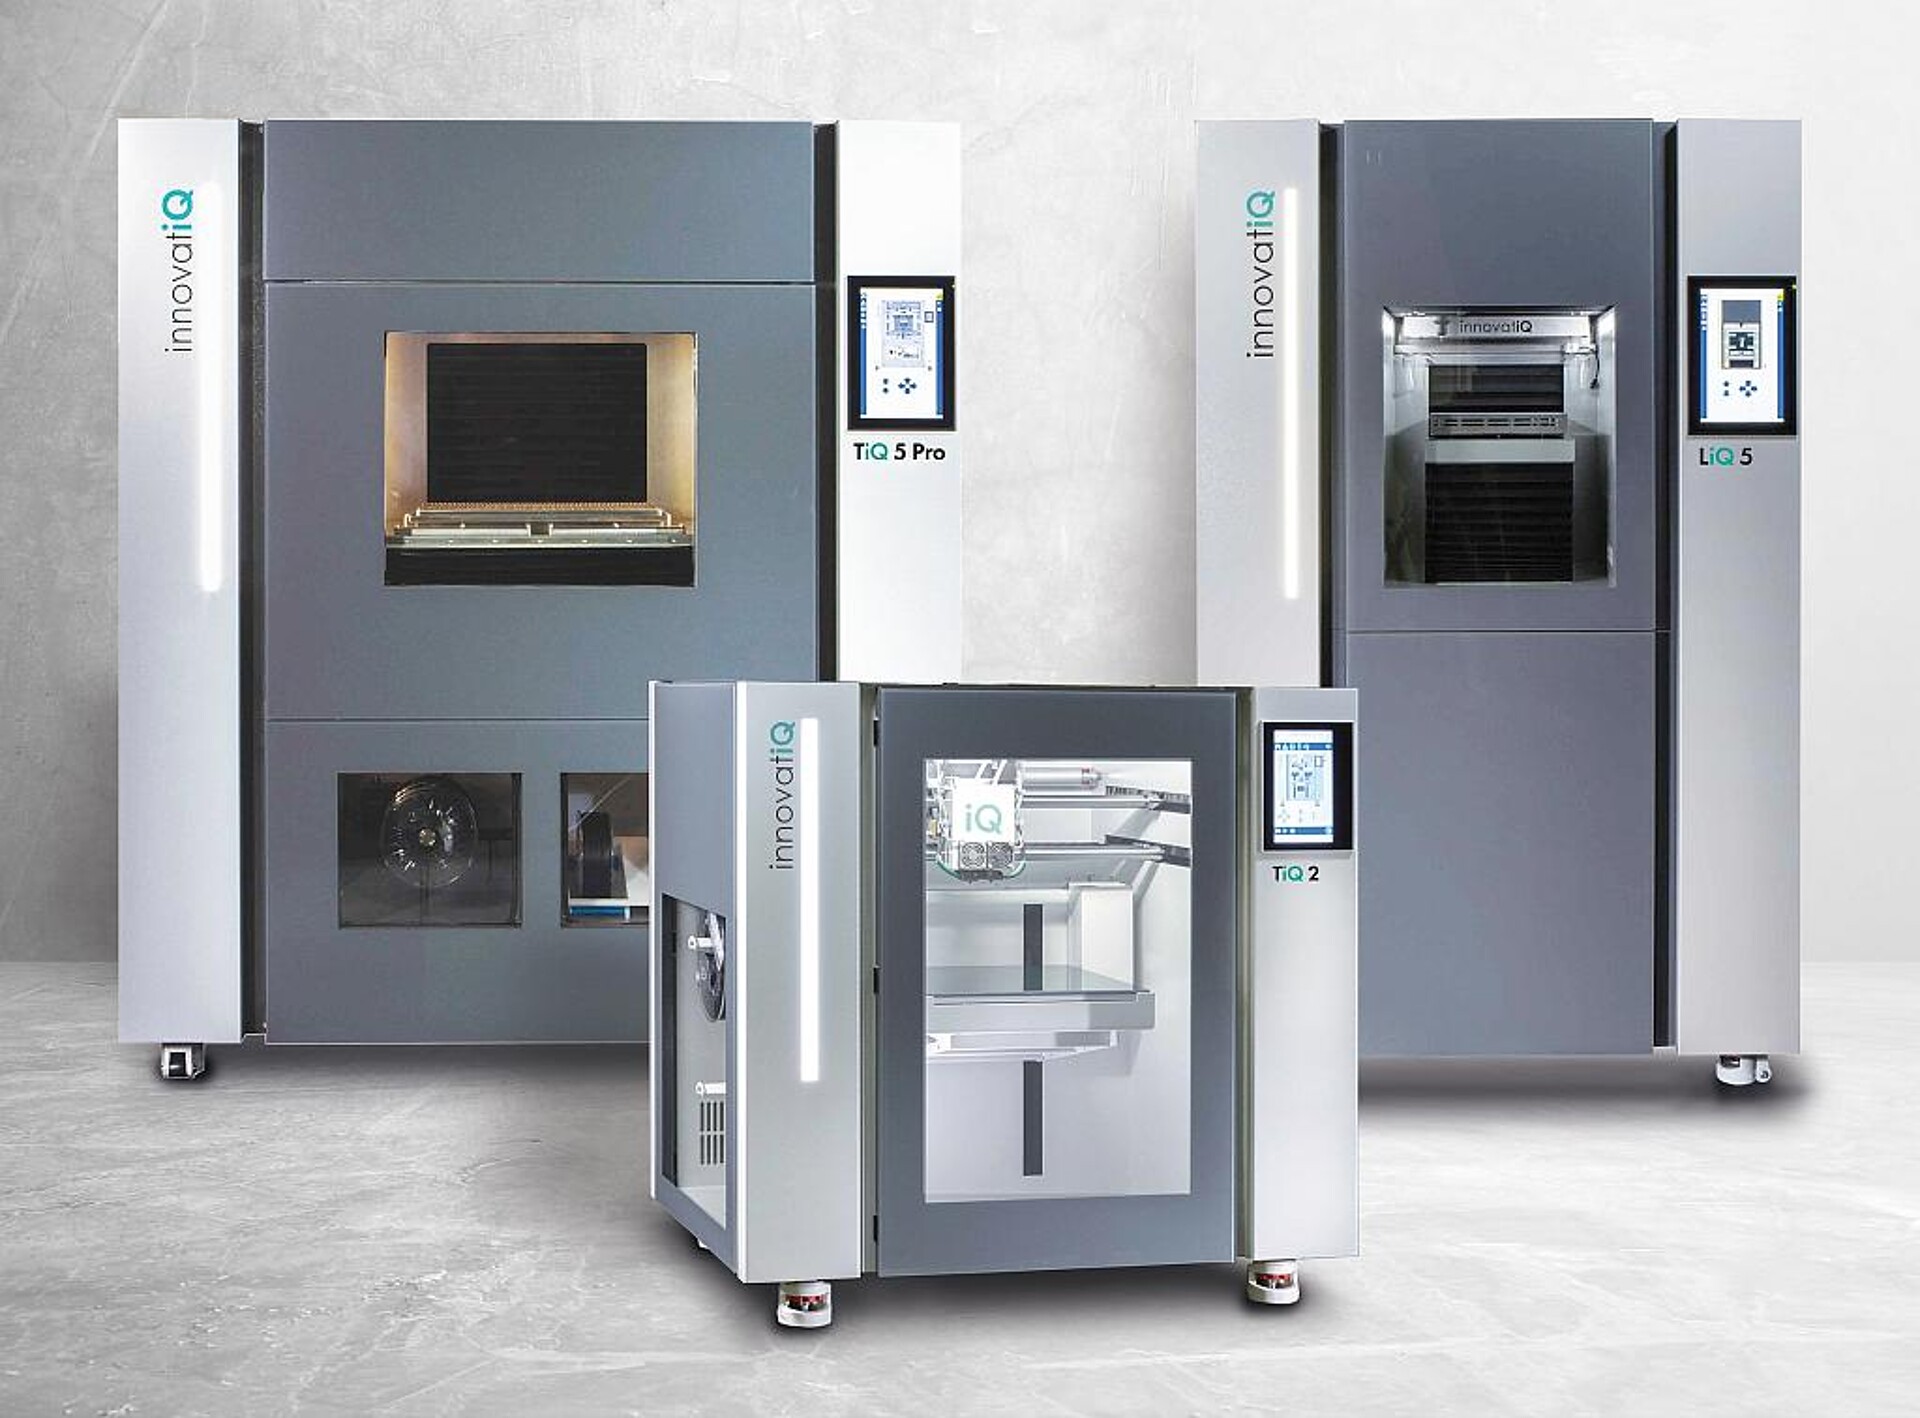 Die 3D-Drucker der Baureihen TiQ und LiQ von InnovatiQ sind für die Verarbeitung von faserverstärkten Filamenten und Standardsilikonen geeignet. (Foto: innovatiQ)